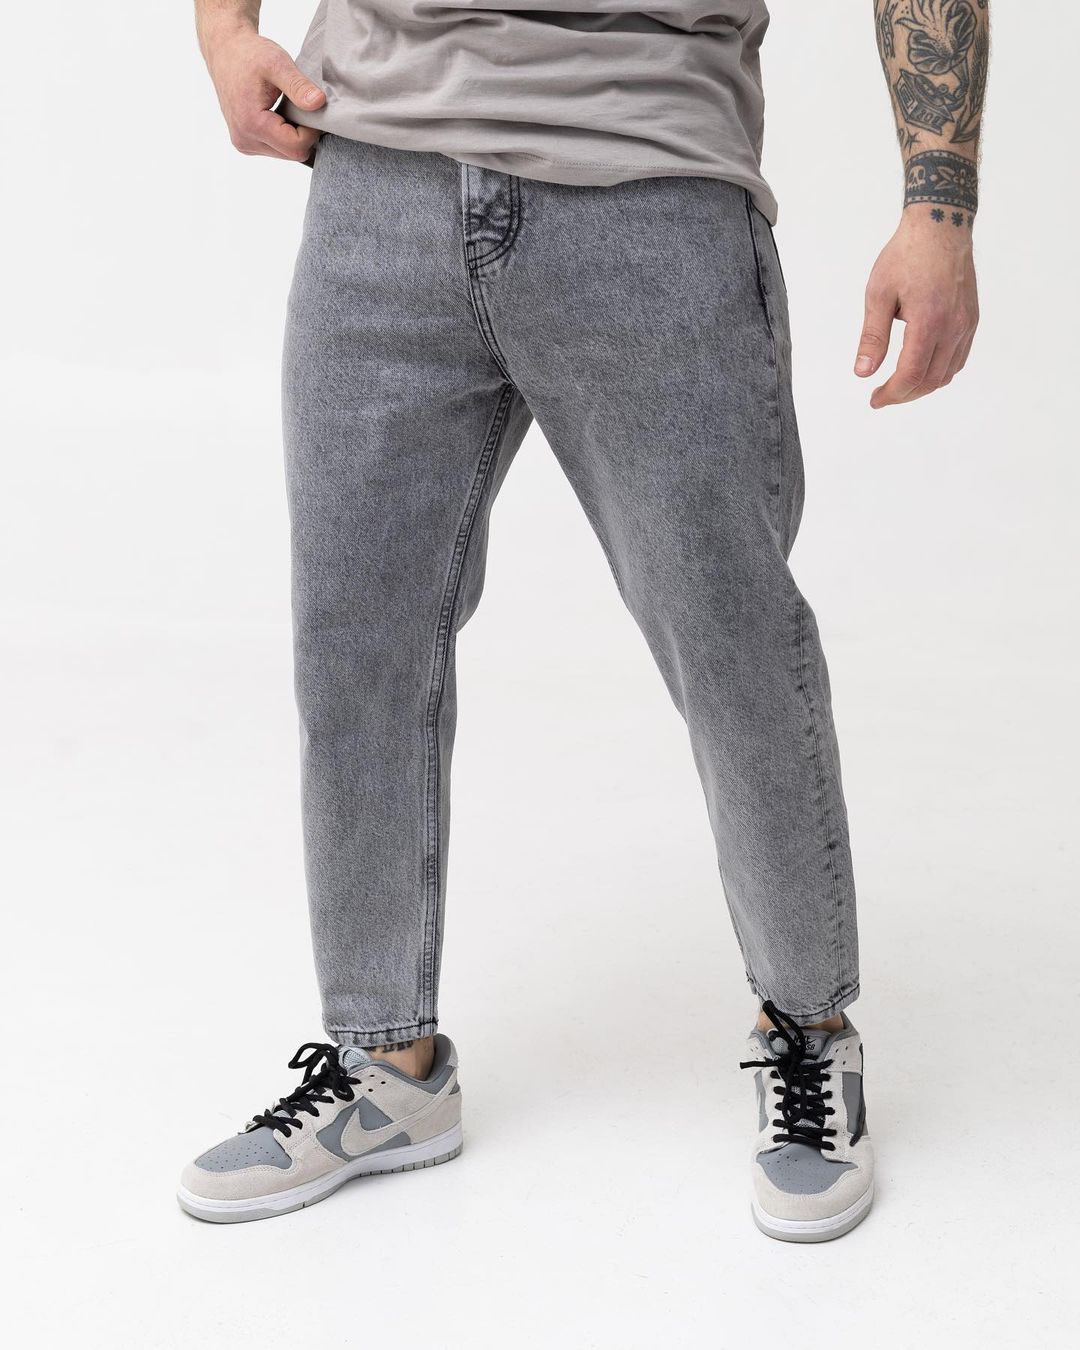 Чоловічі сірі джинси BEZET базові бойфренди - Фото 1